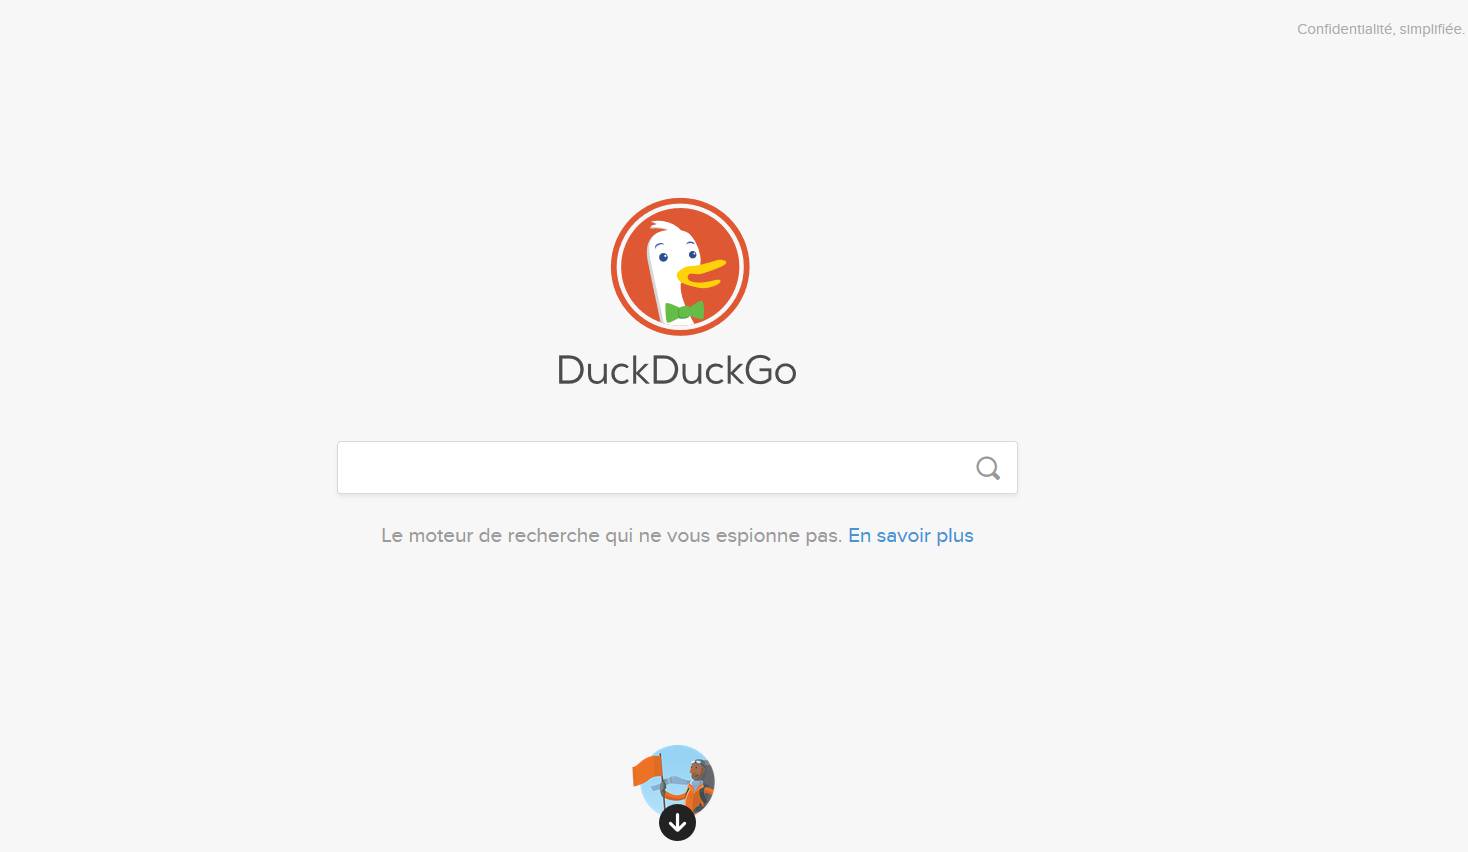 DuckDuckGo - Le moteur de recherche qui protège votre vie privée